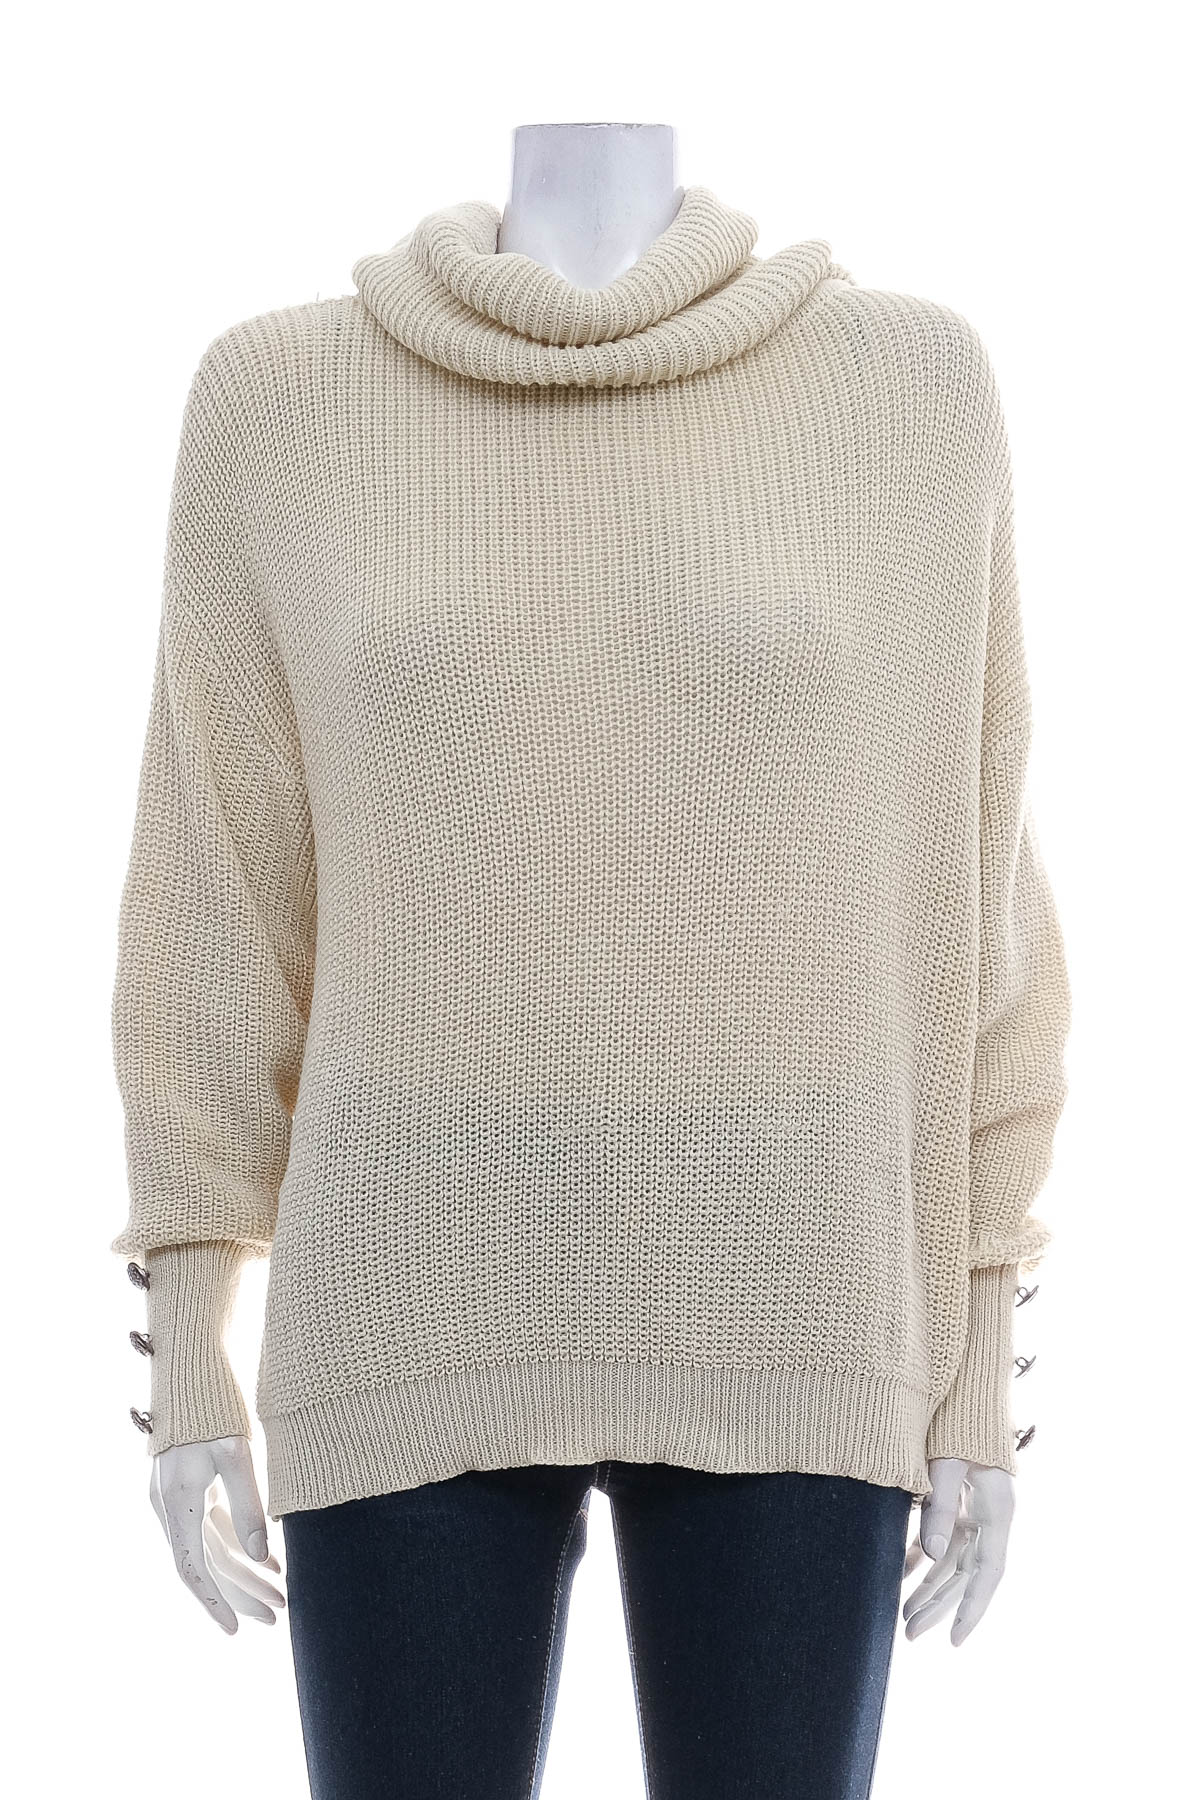 Дамски пуловер - C.O.Z.Y by Shopcozy - 0